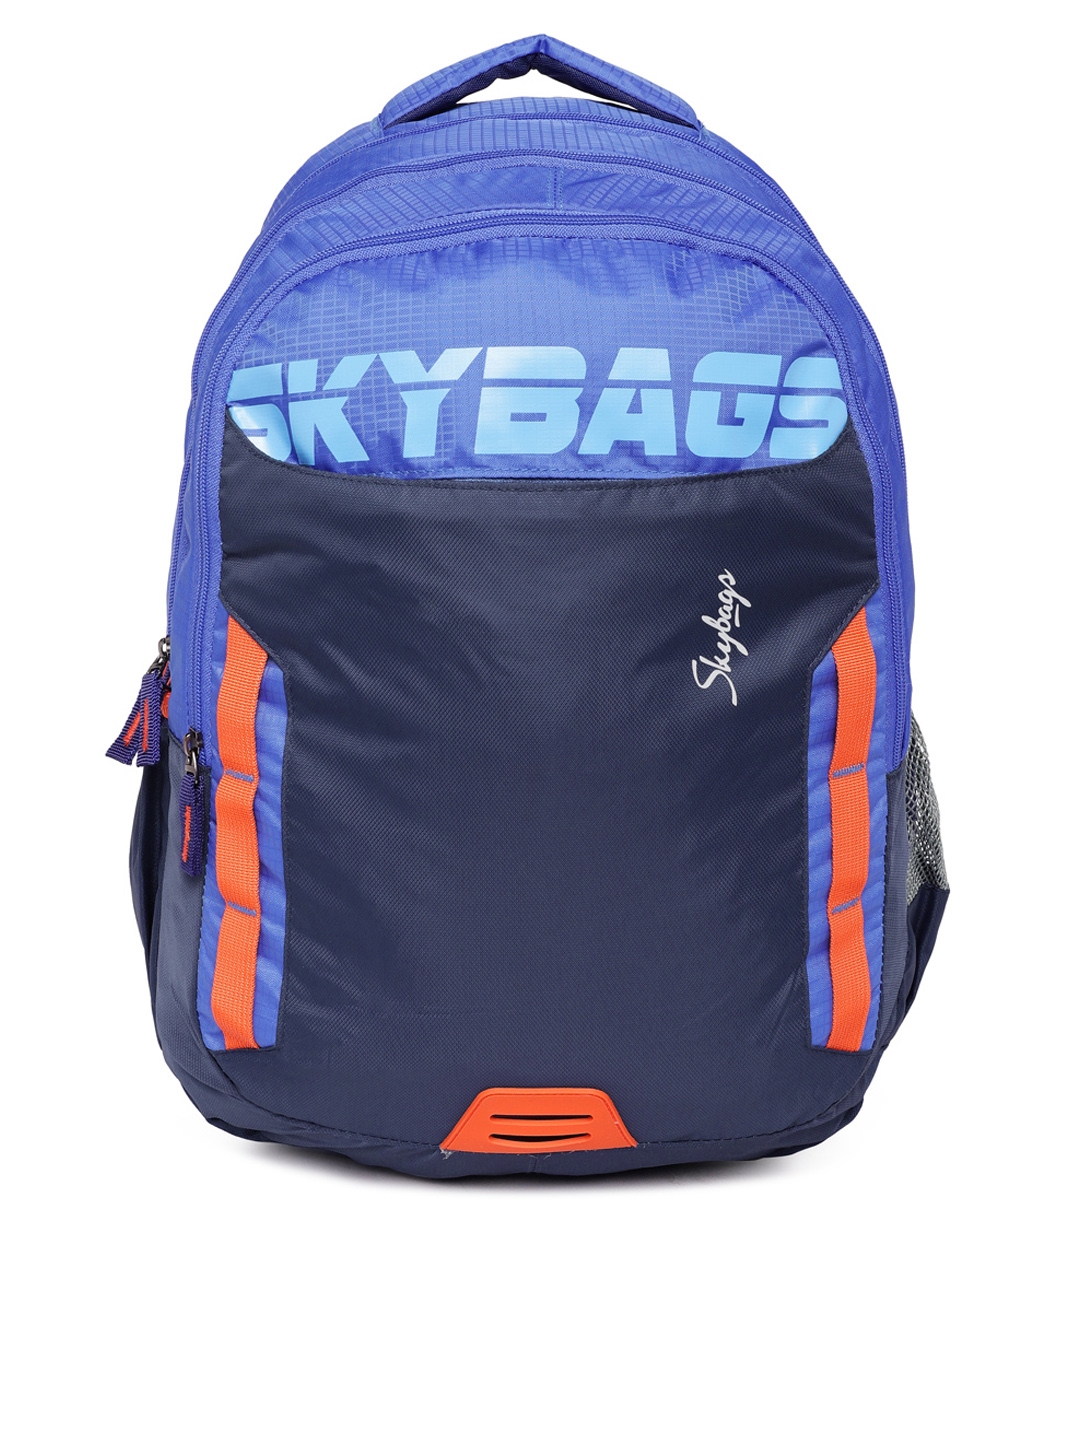 Buy Skybags Unisex Blue Brand Logo Backpack - Backpacks for Unisex ...